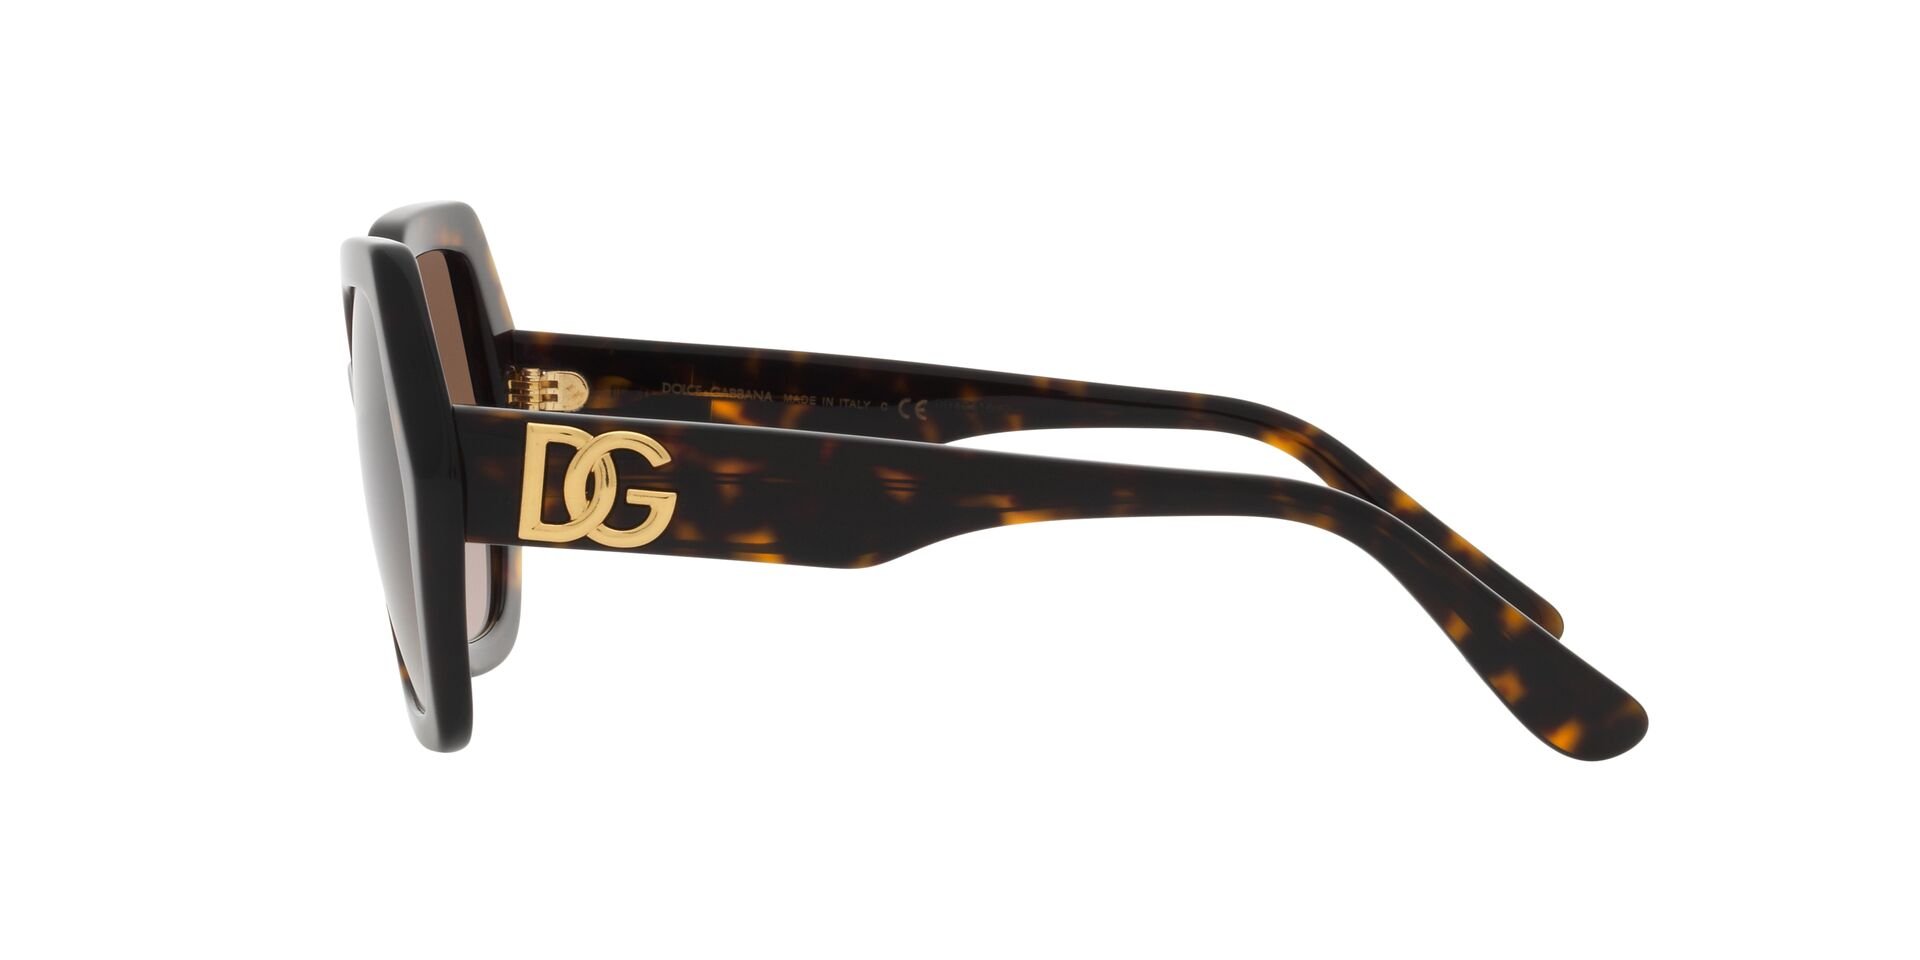 Dolce & Gabbana Sonnenbrille DG4406 502/13